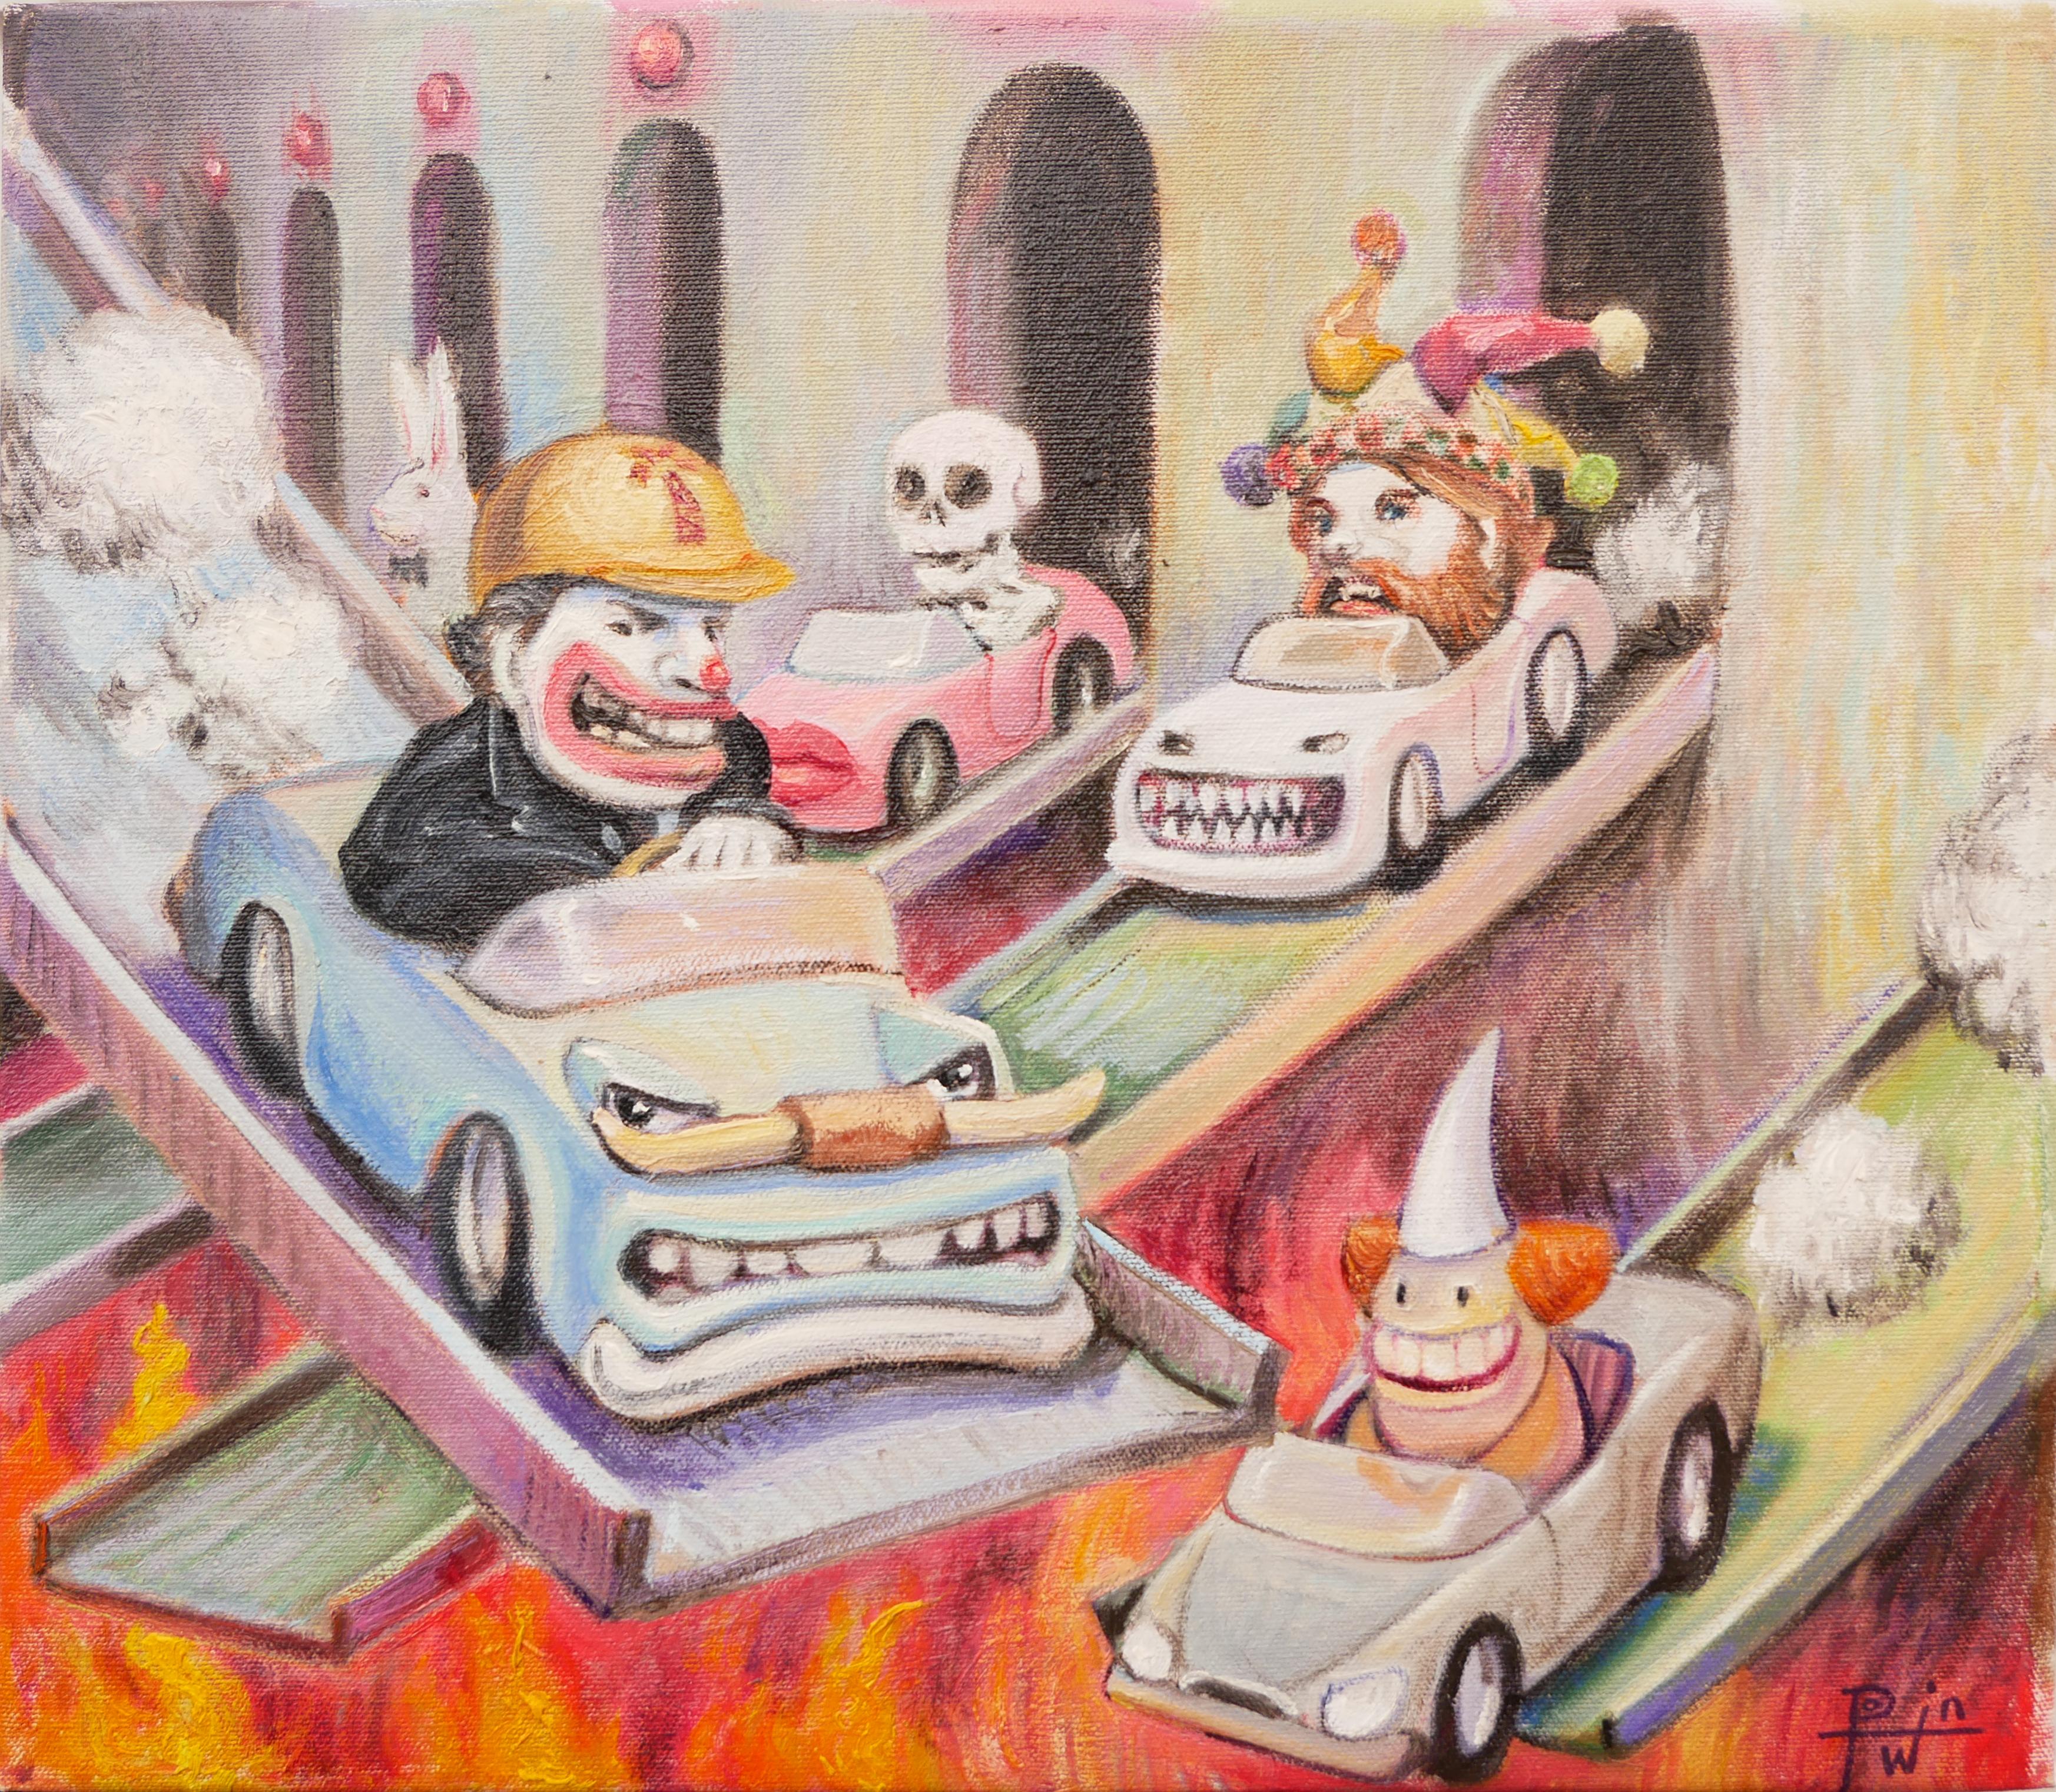 Fossil Fuel - Paysage urbain contemporain surréaliste pastel de clowns chevauchant des voitures